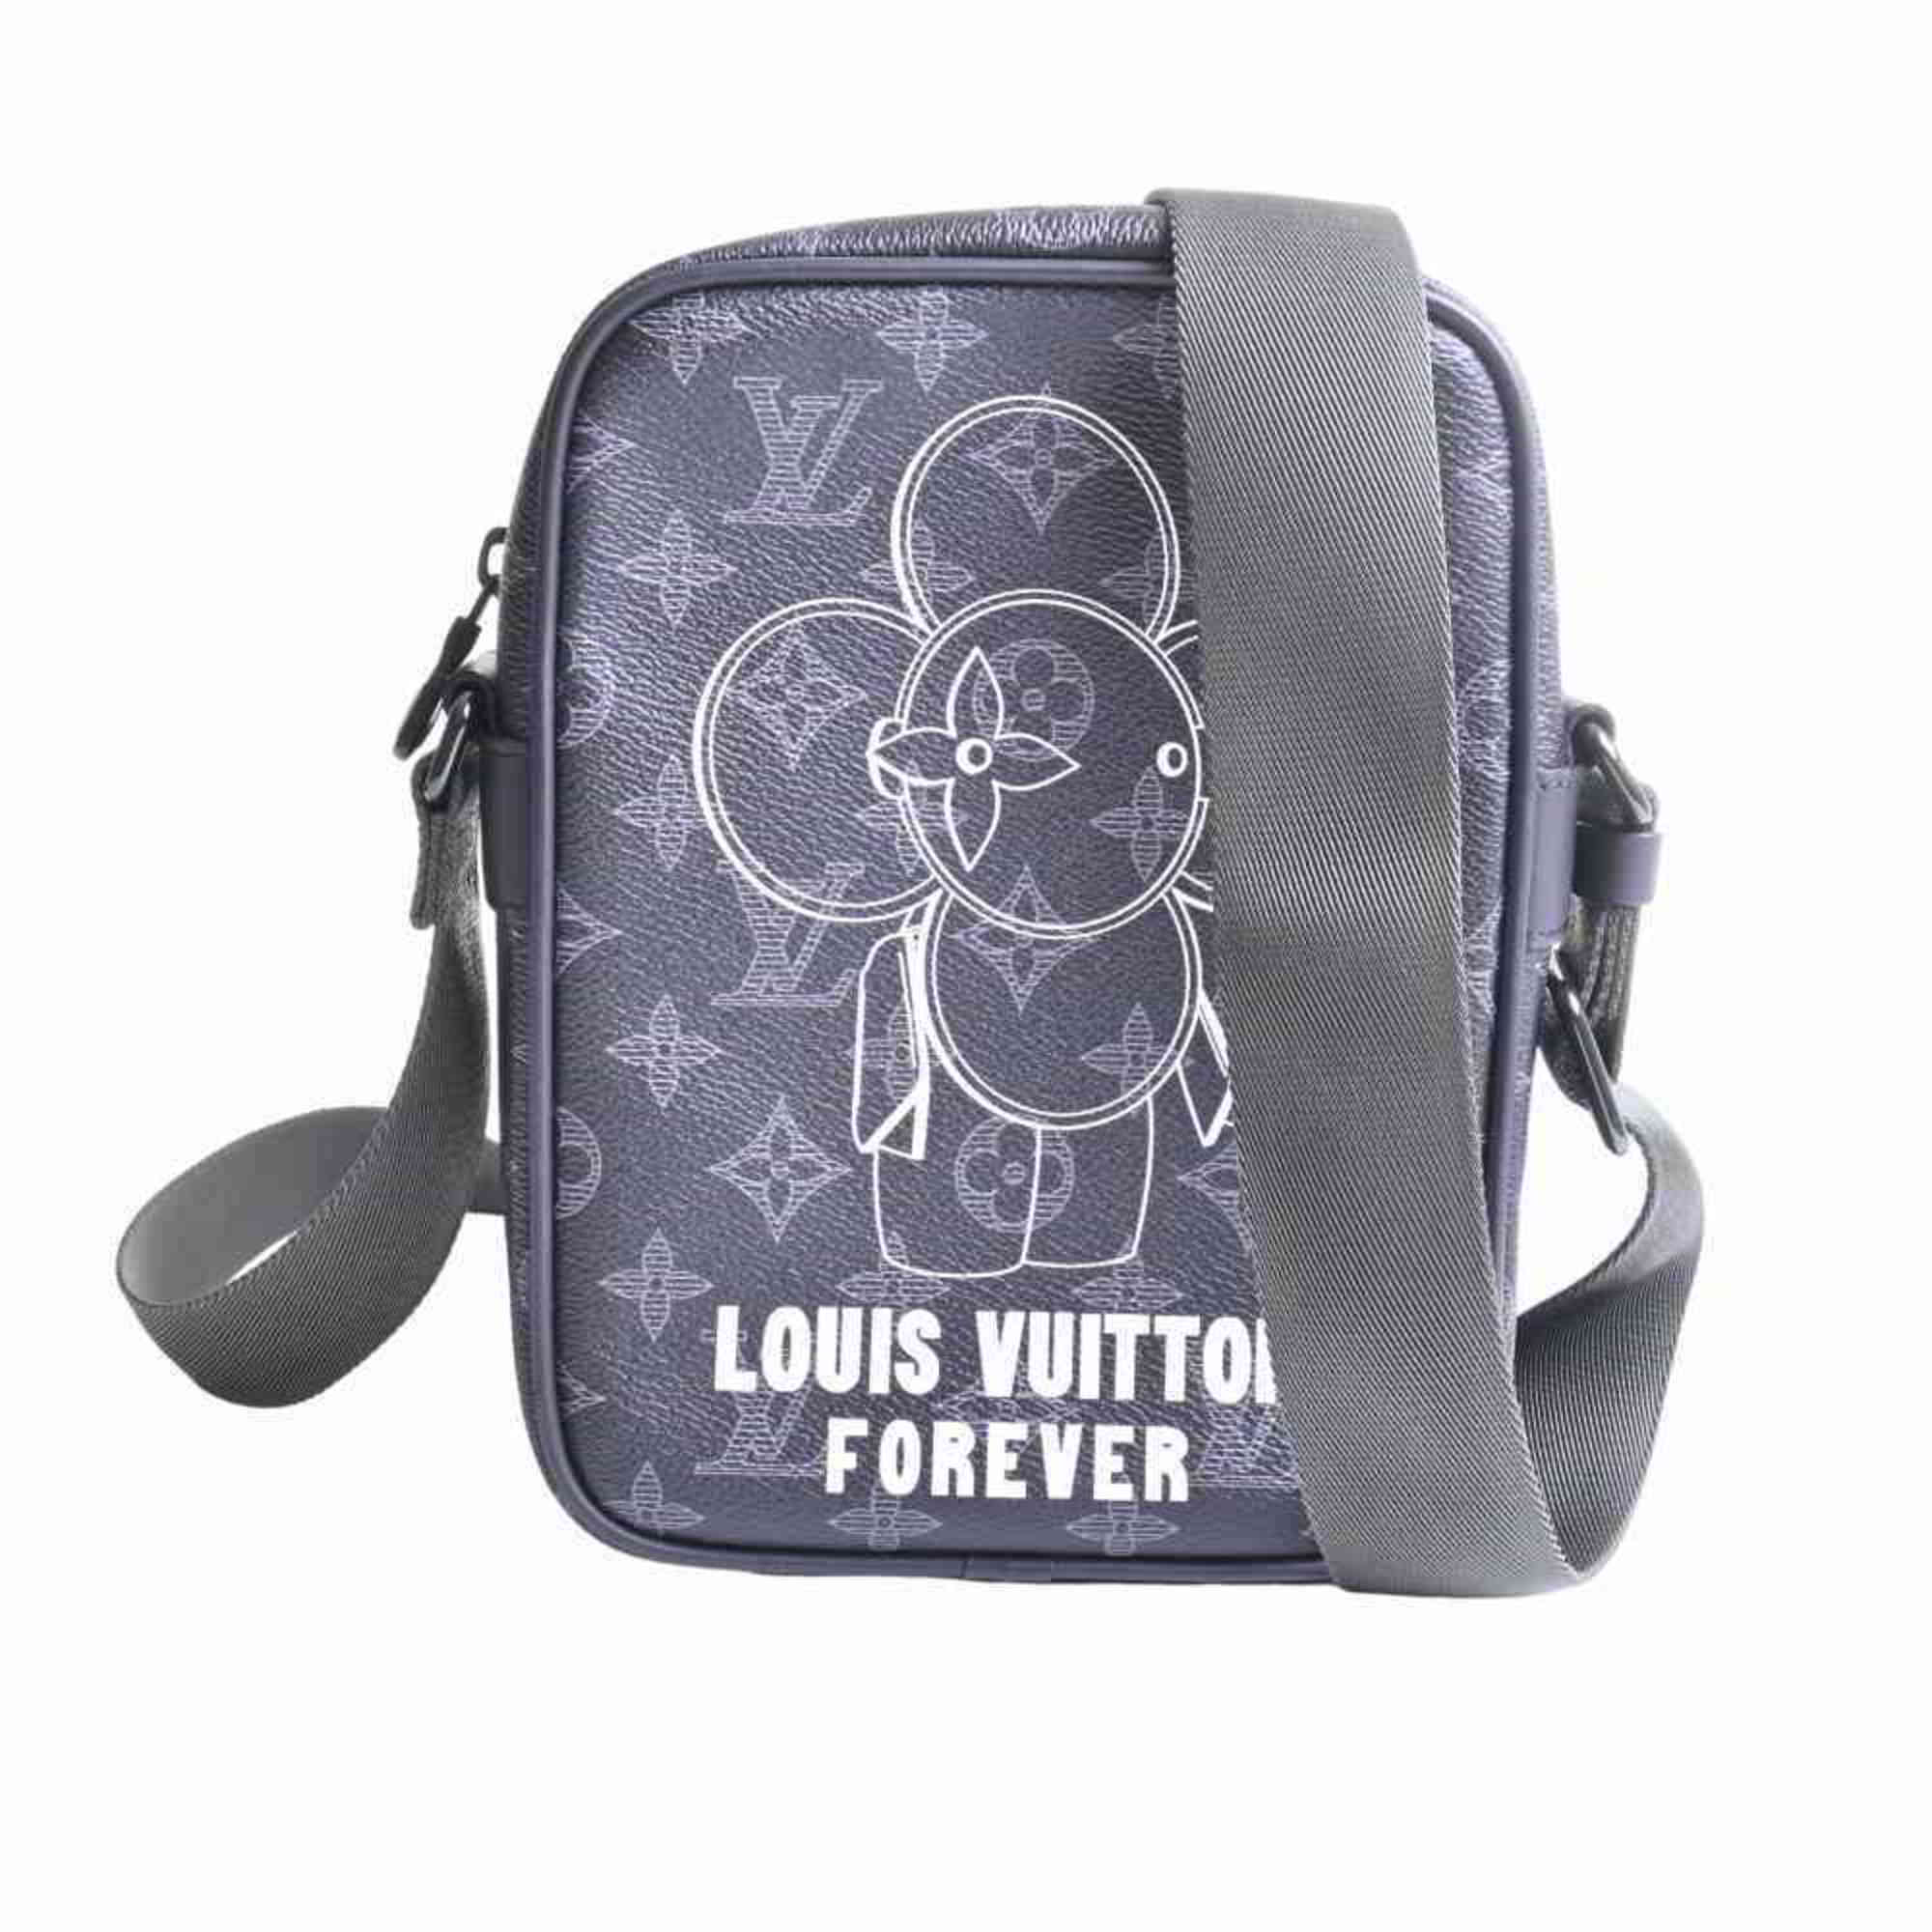 Louis Vuitton, Bags, Louis Vuitton Forever Monogram Eclipse Danube Pm